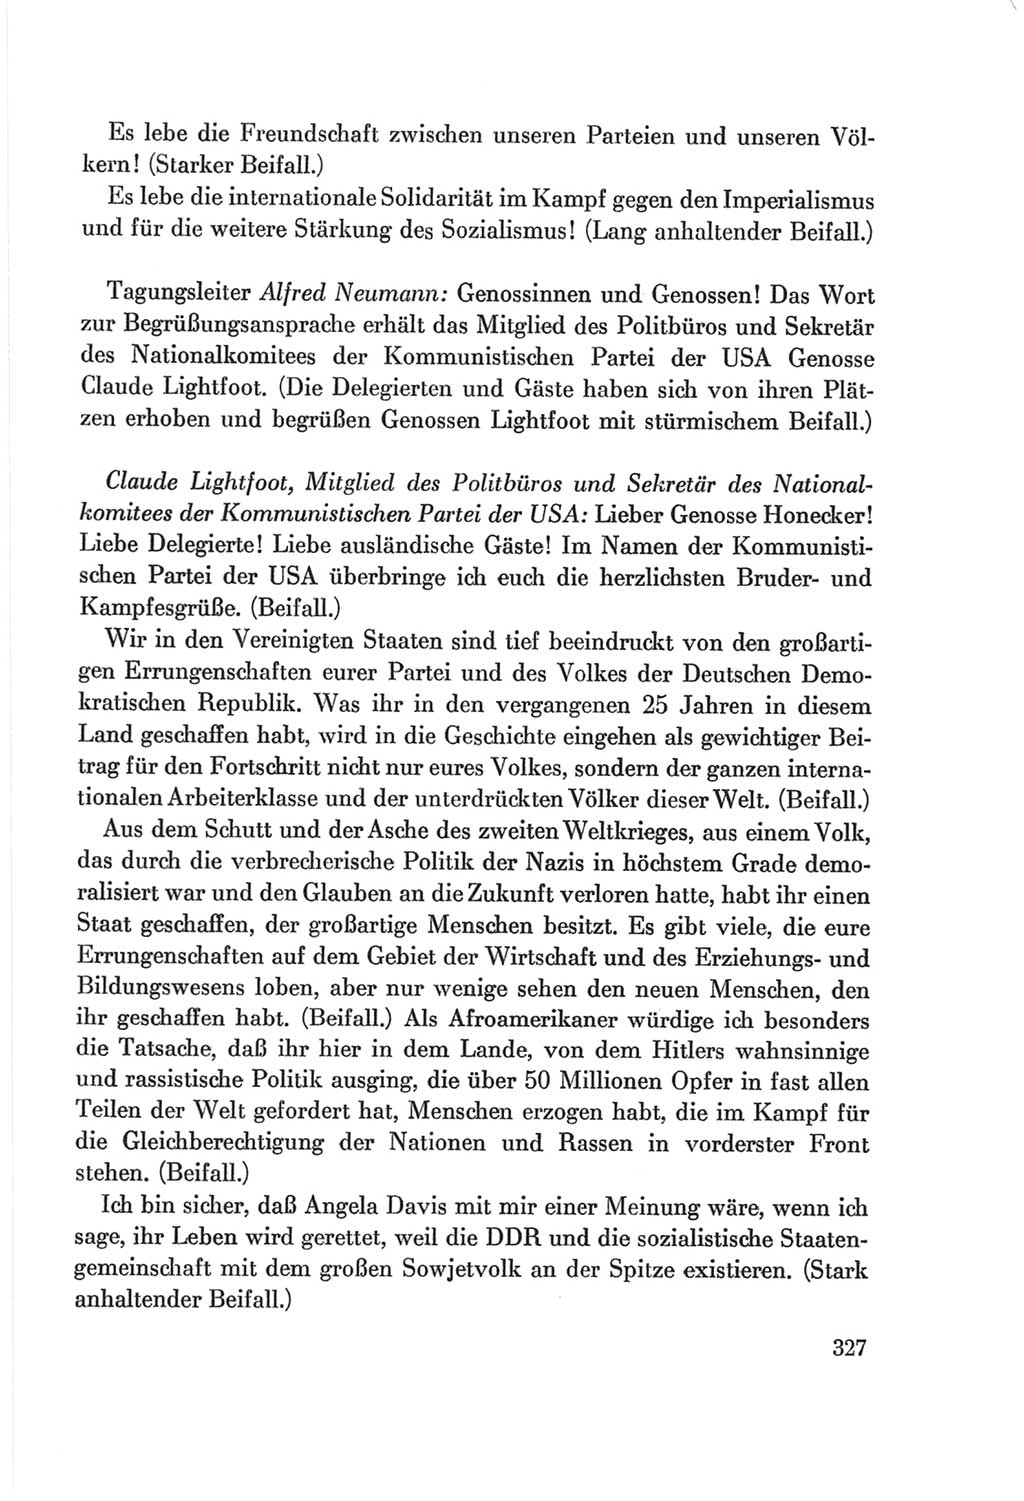 Protokoll der Verhandlungen des Ⅷ. Parteitages der Sozialistischen Einheitspartei Deutschlands (SED) [Deutsche Demokratische Republik (DDR)] 1971, Band 1, Seite 327 (Prot. Verh. Ⅷ. PT SED DDR 1971, Bd. 1, S. 327)